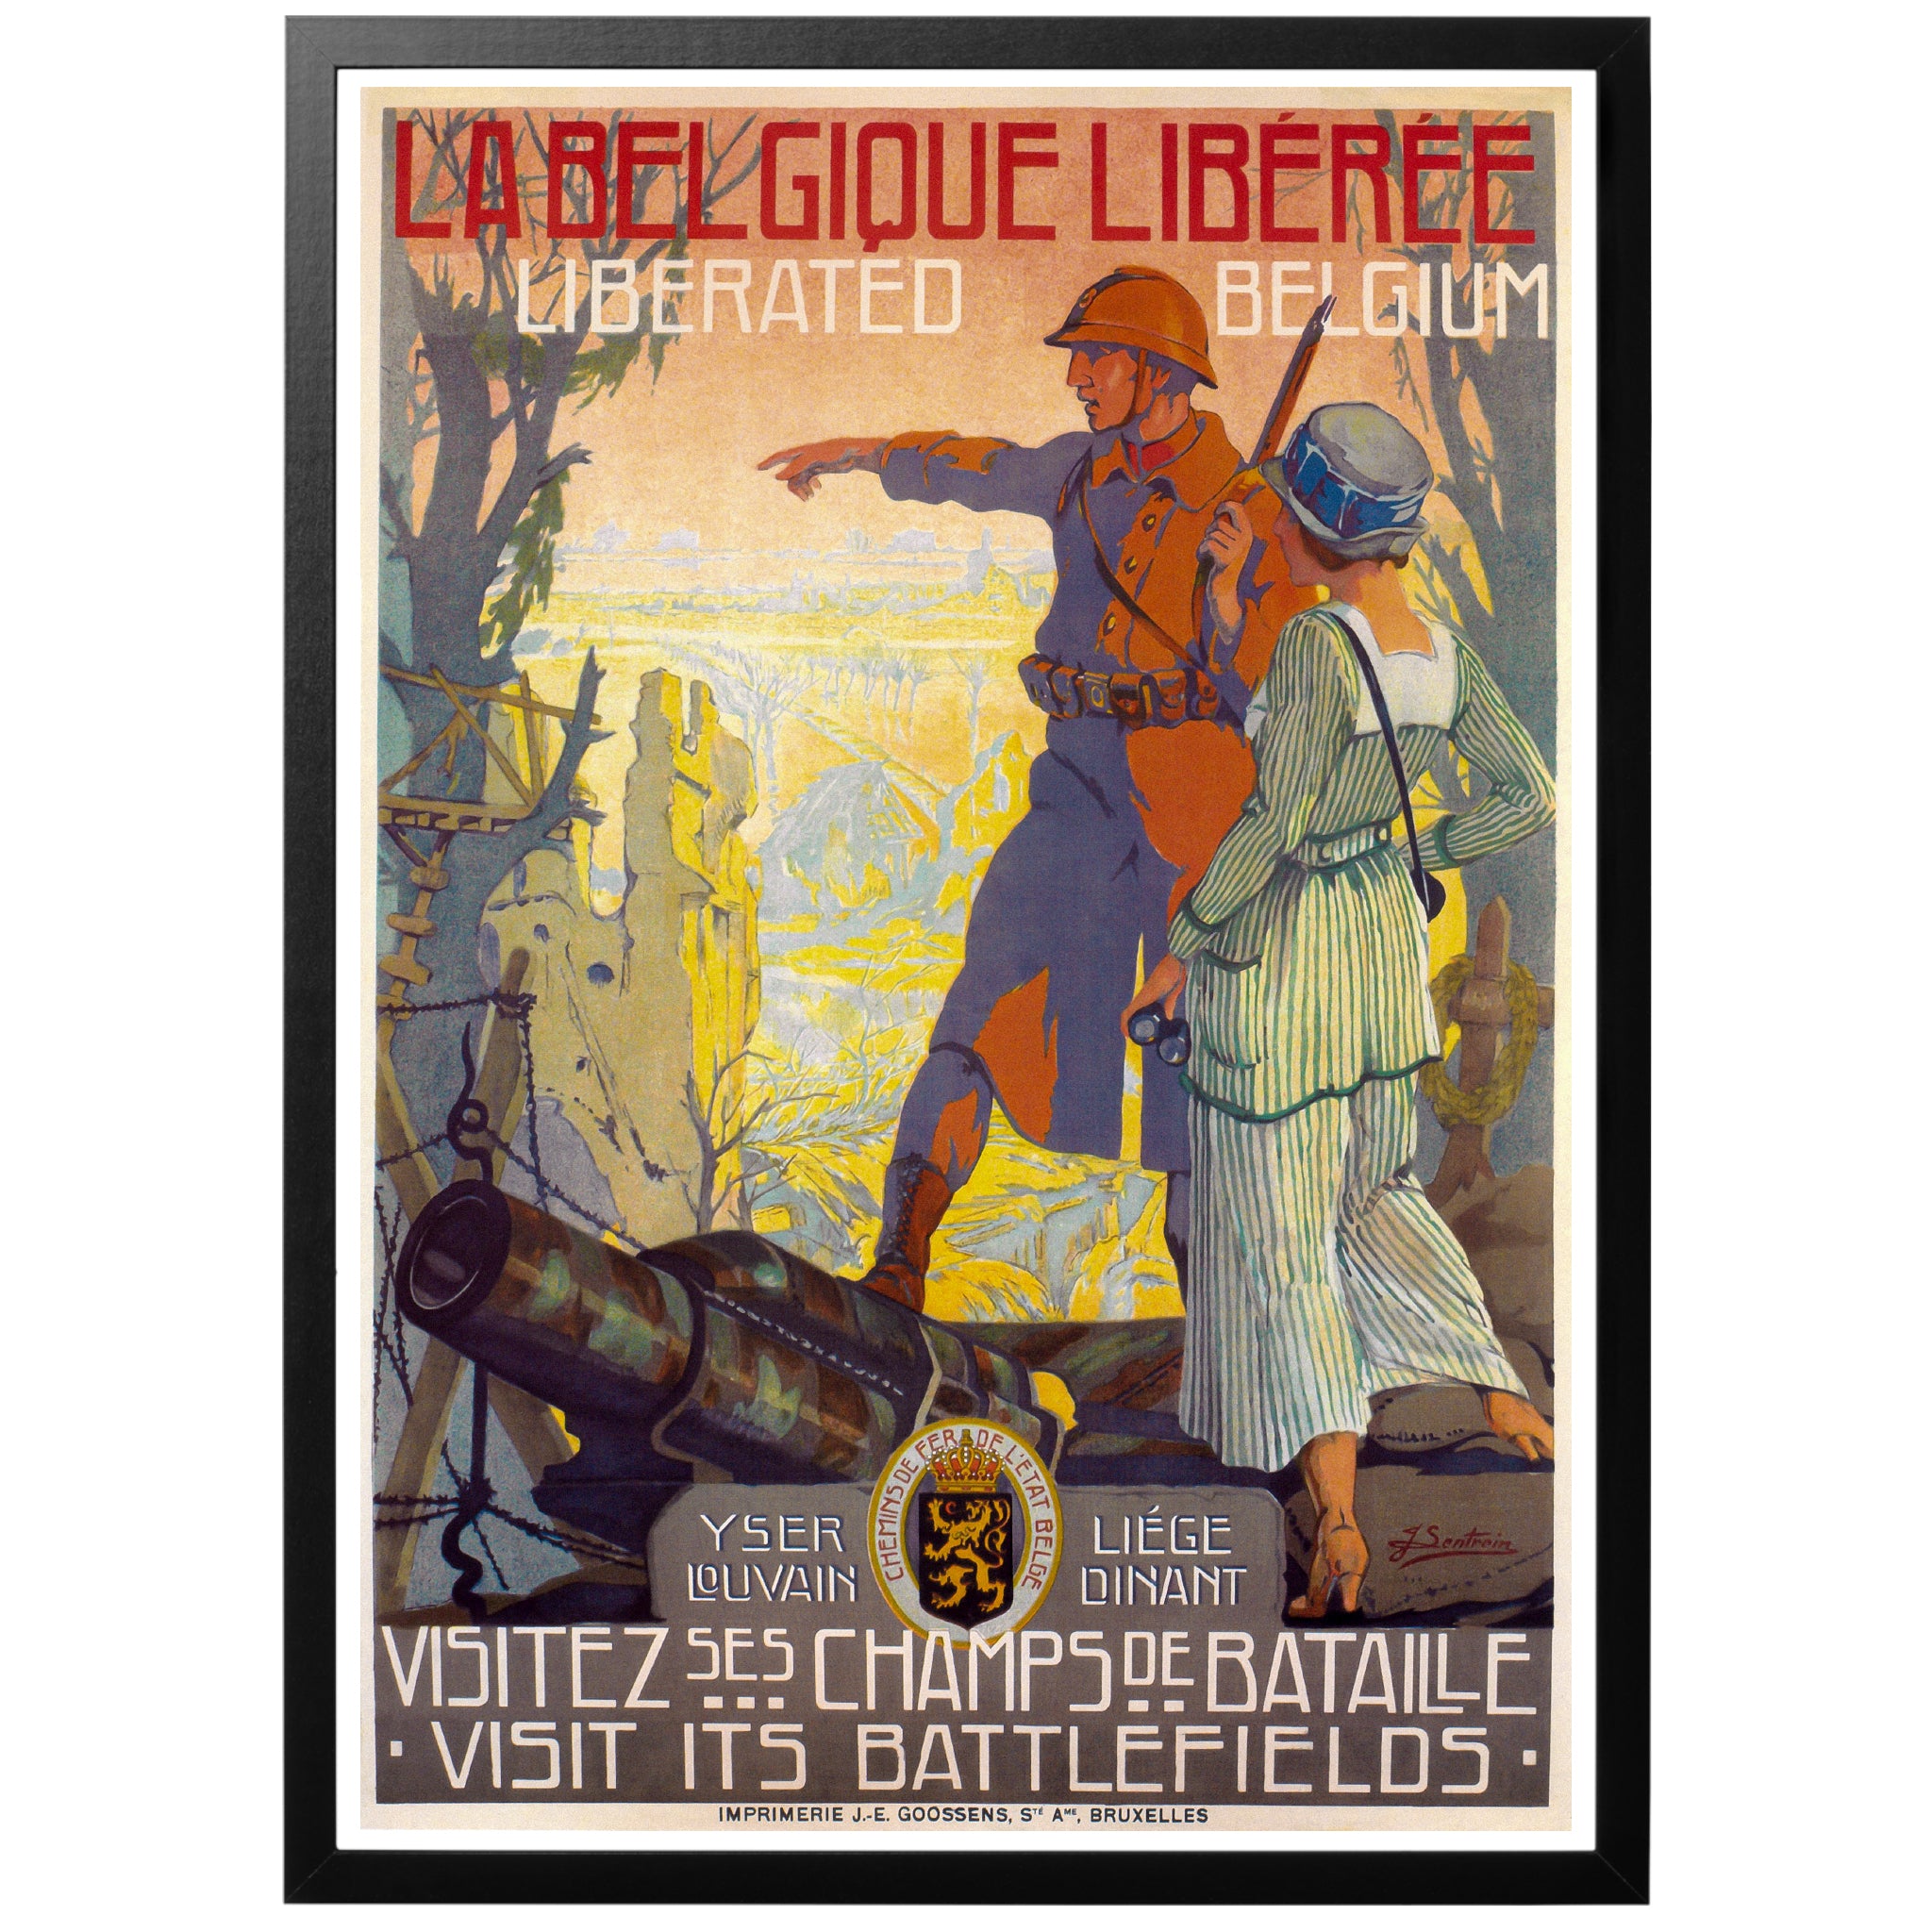 Leerling Verbeelding Omleiding Liberated Belgium Poster